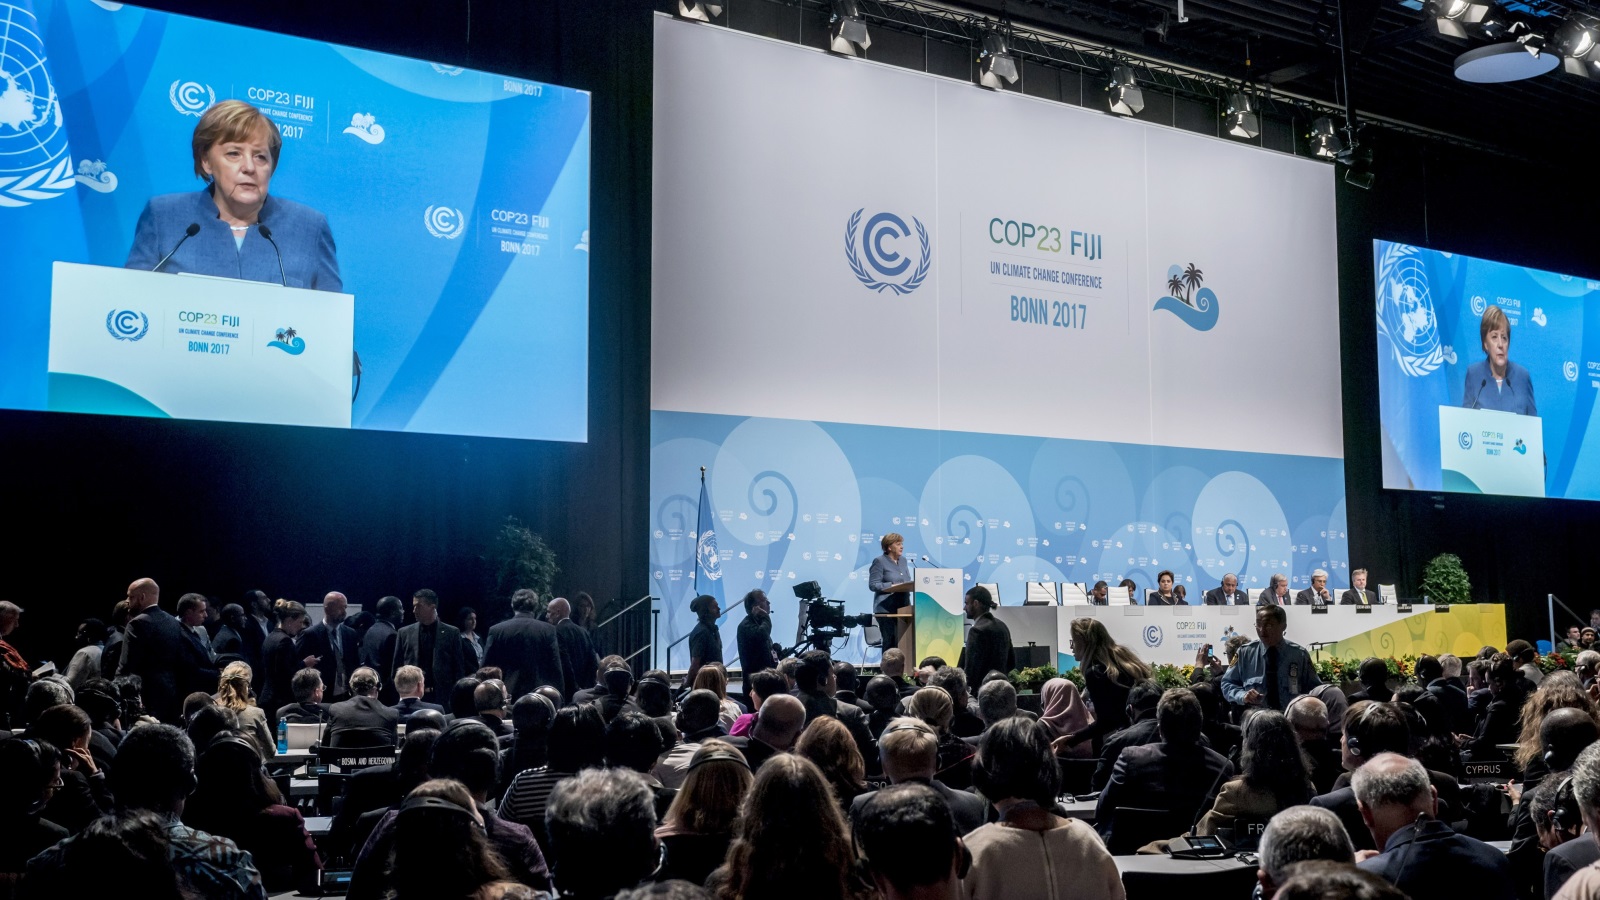 أنجيلا ميركل تتحدث أمام مؤتمر الأمم المتحدة لتغير المناخ في بون الذي انتهى في 17 نوفمبر/تشرين الثاني الجاري (غيتي)